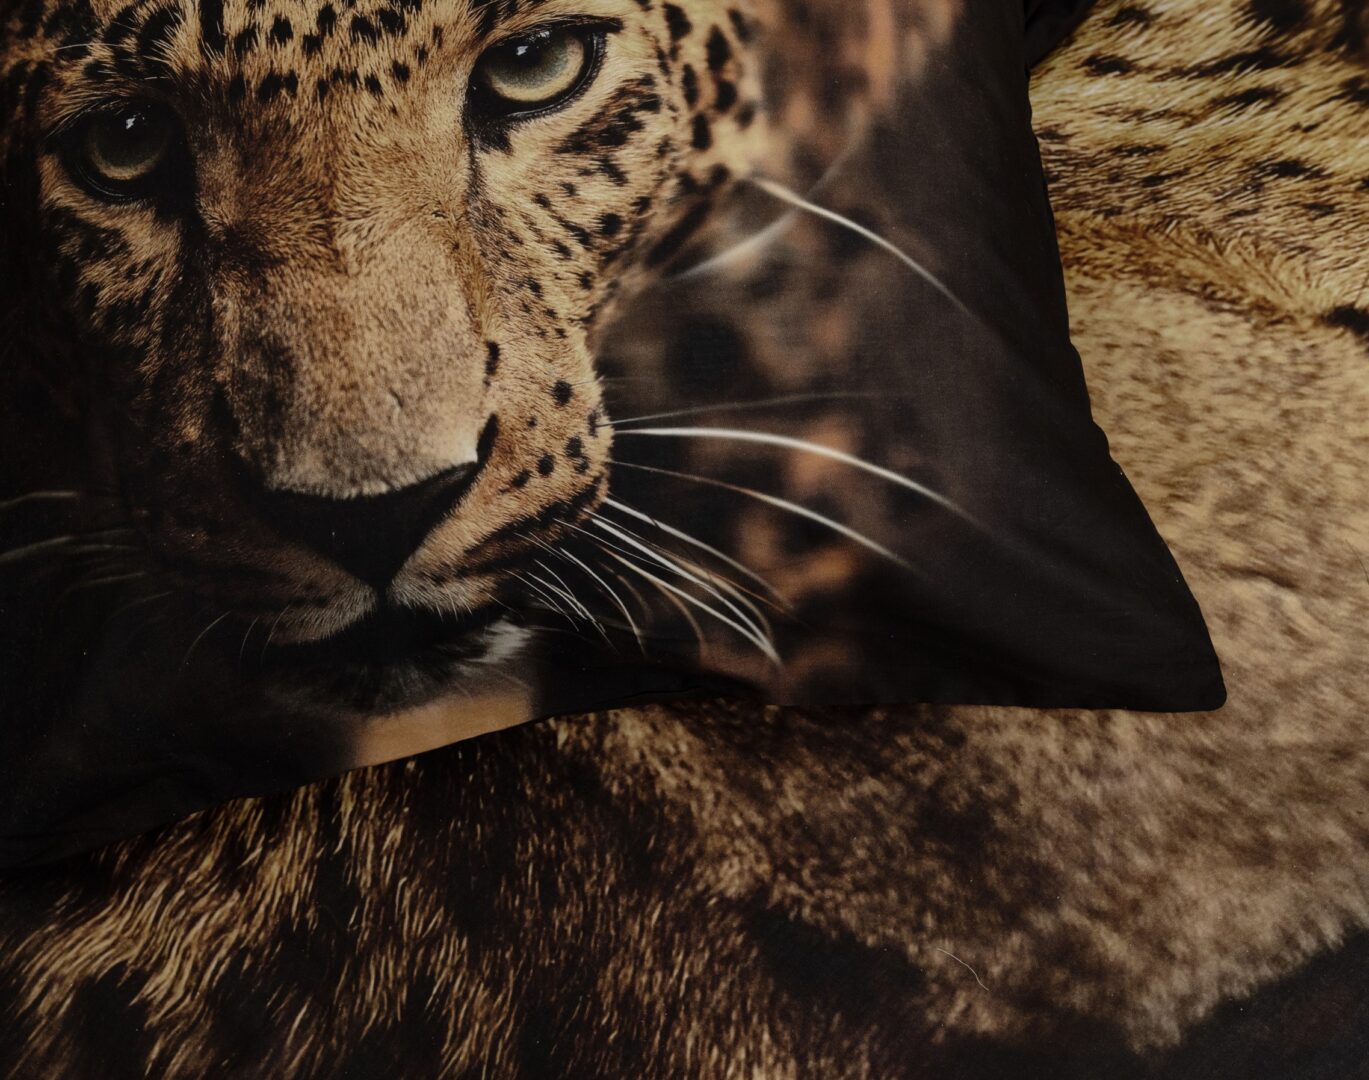 Deze stoere luipaard ziet er indrukwekkend uit